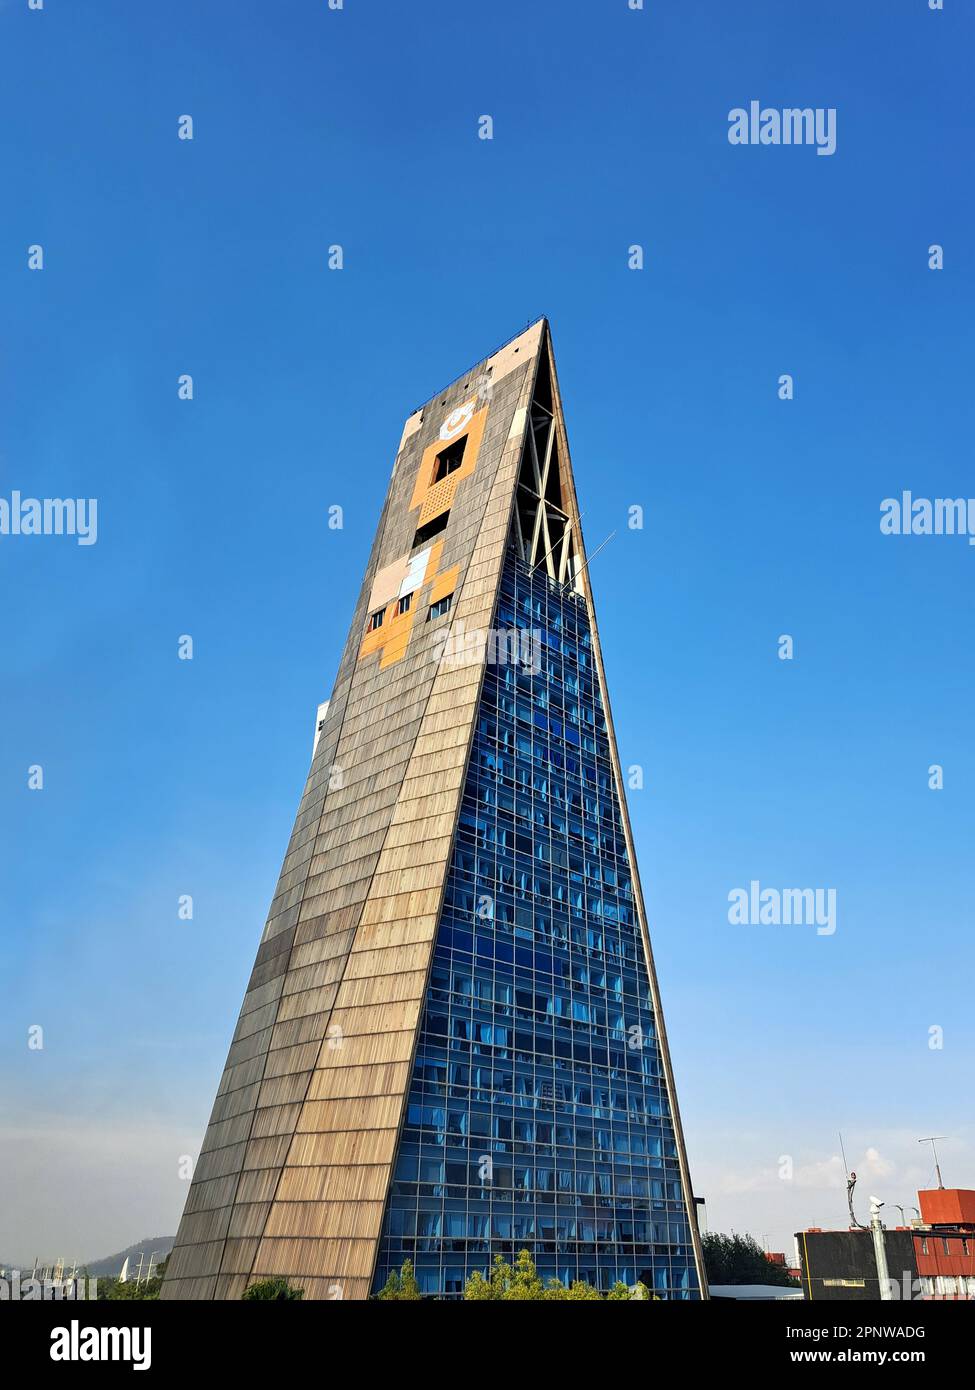 triangular prism building